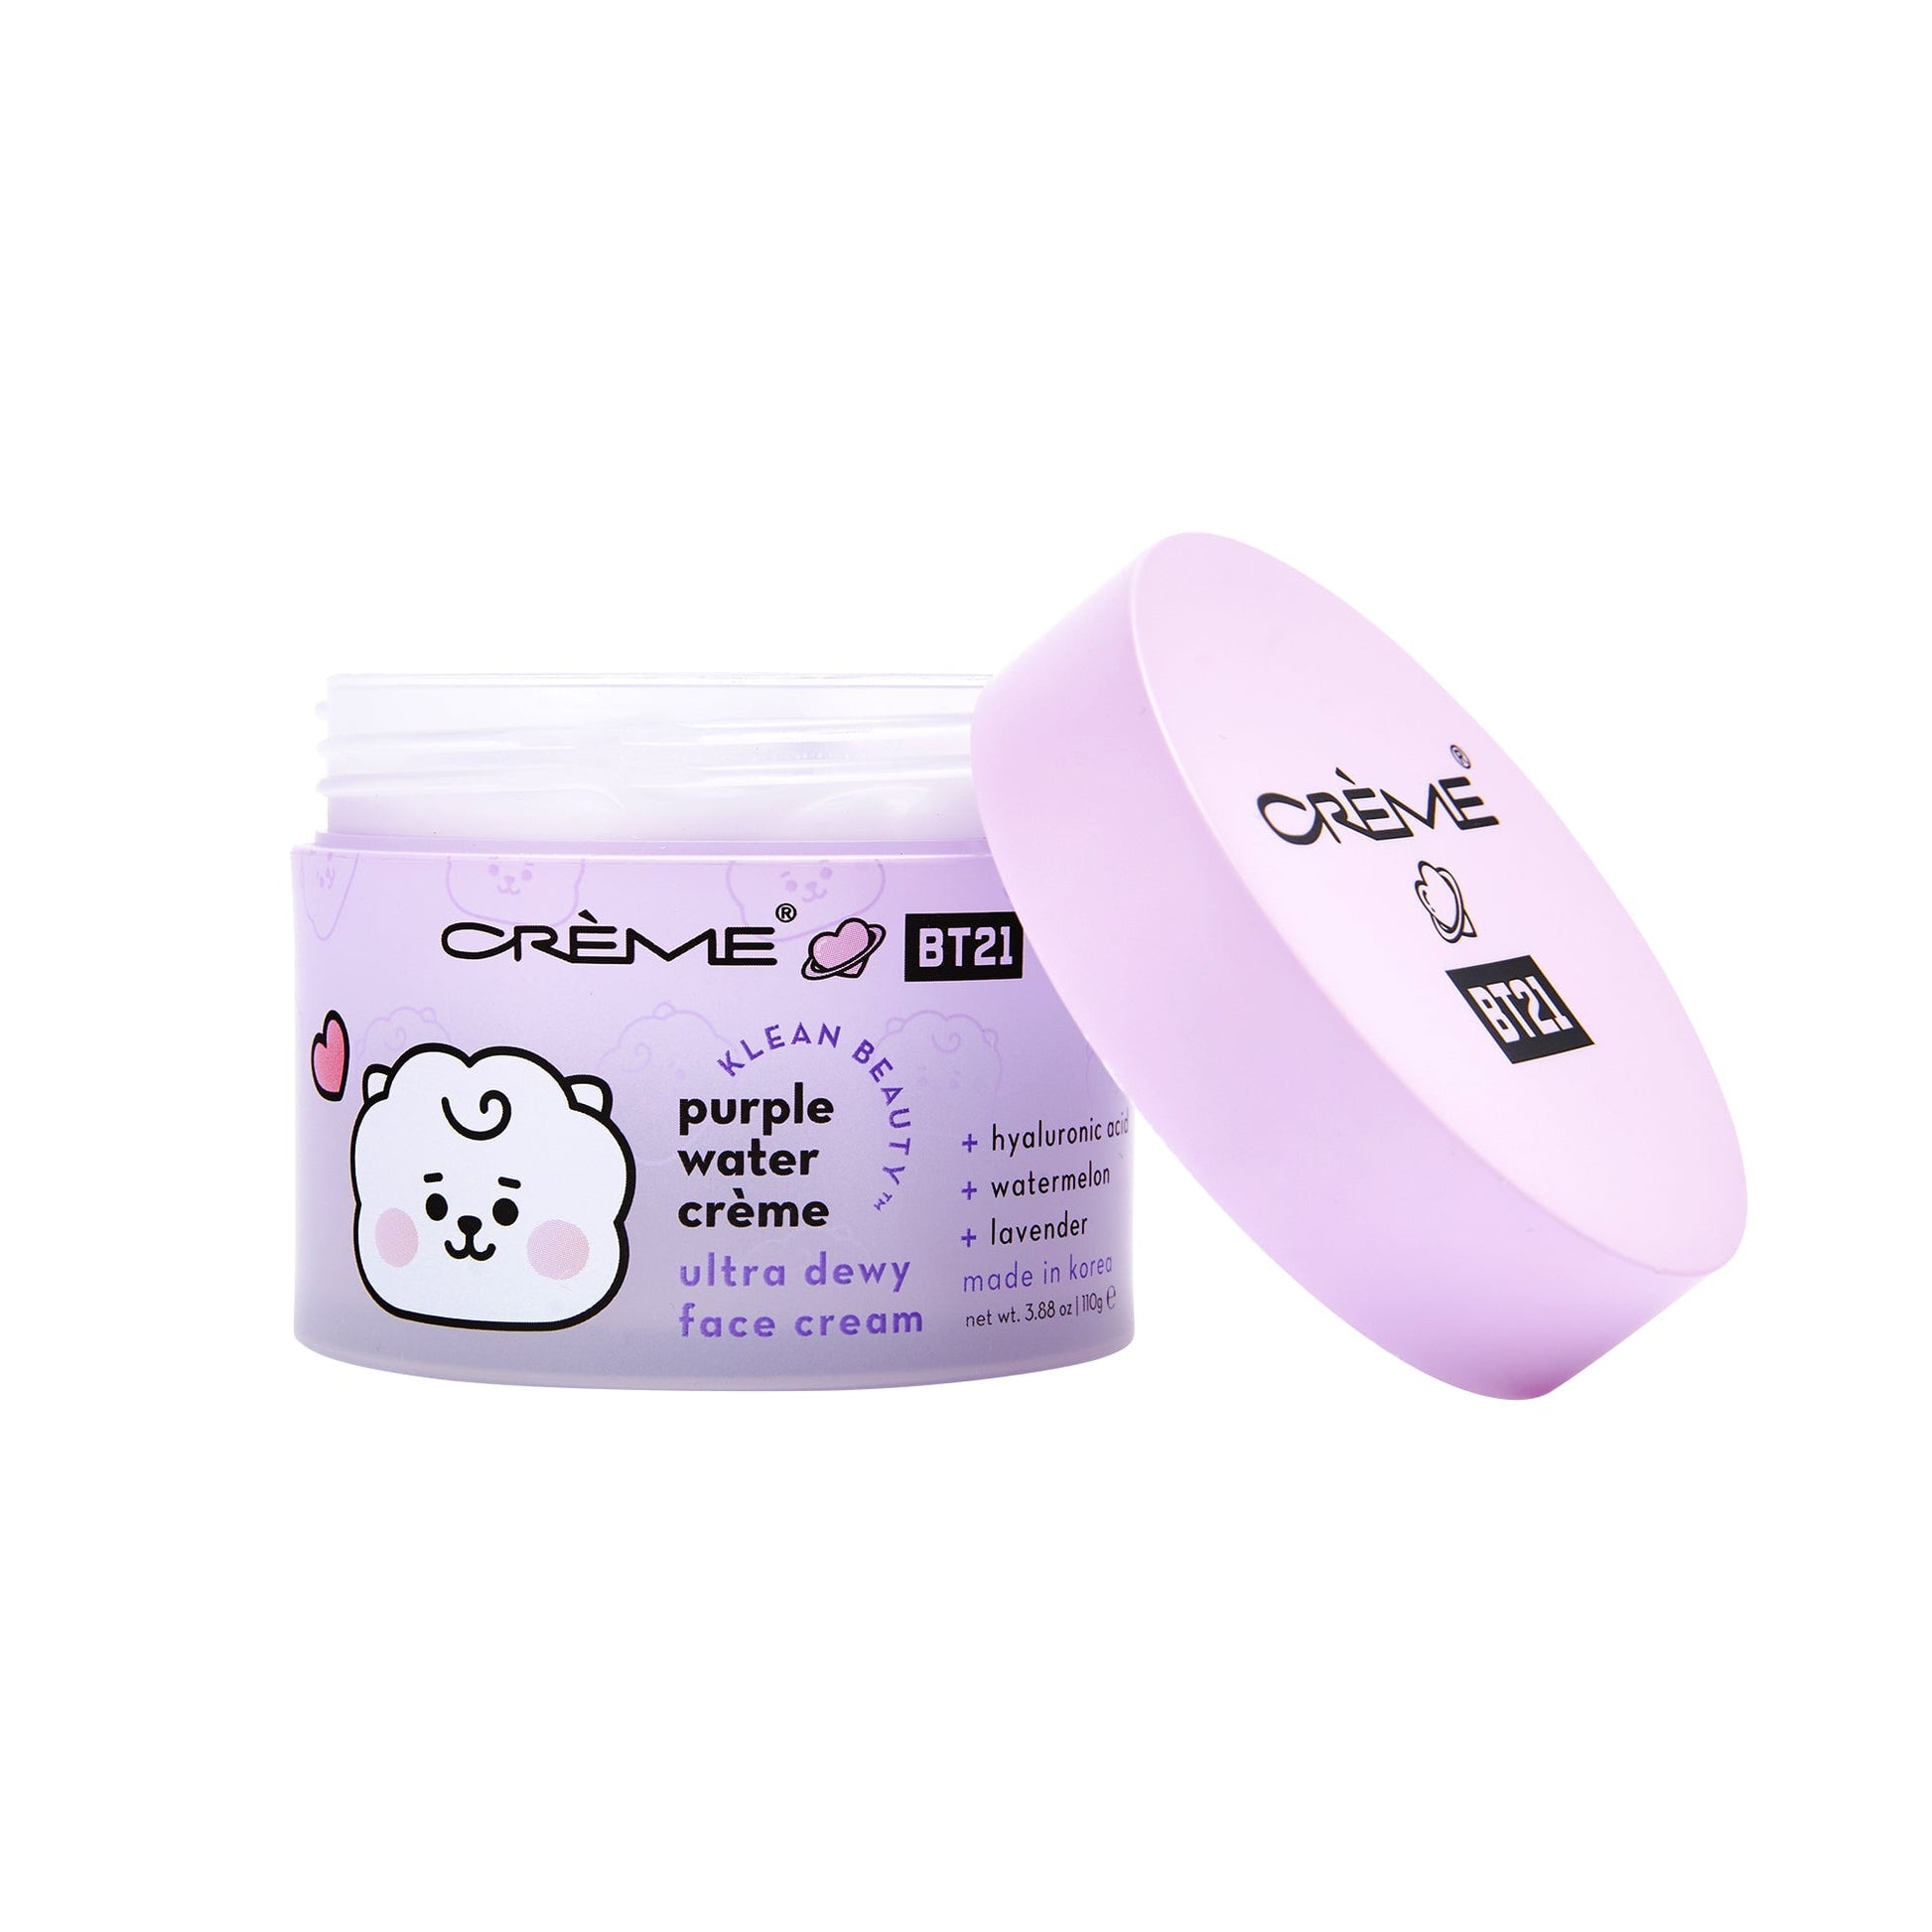 RJ Purple Water Crème - Klean Beauty™️ Facial Moisturizers The Crème Shop x BT21 BABY 